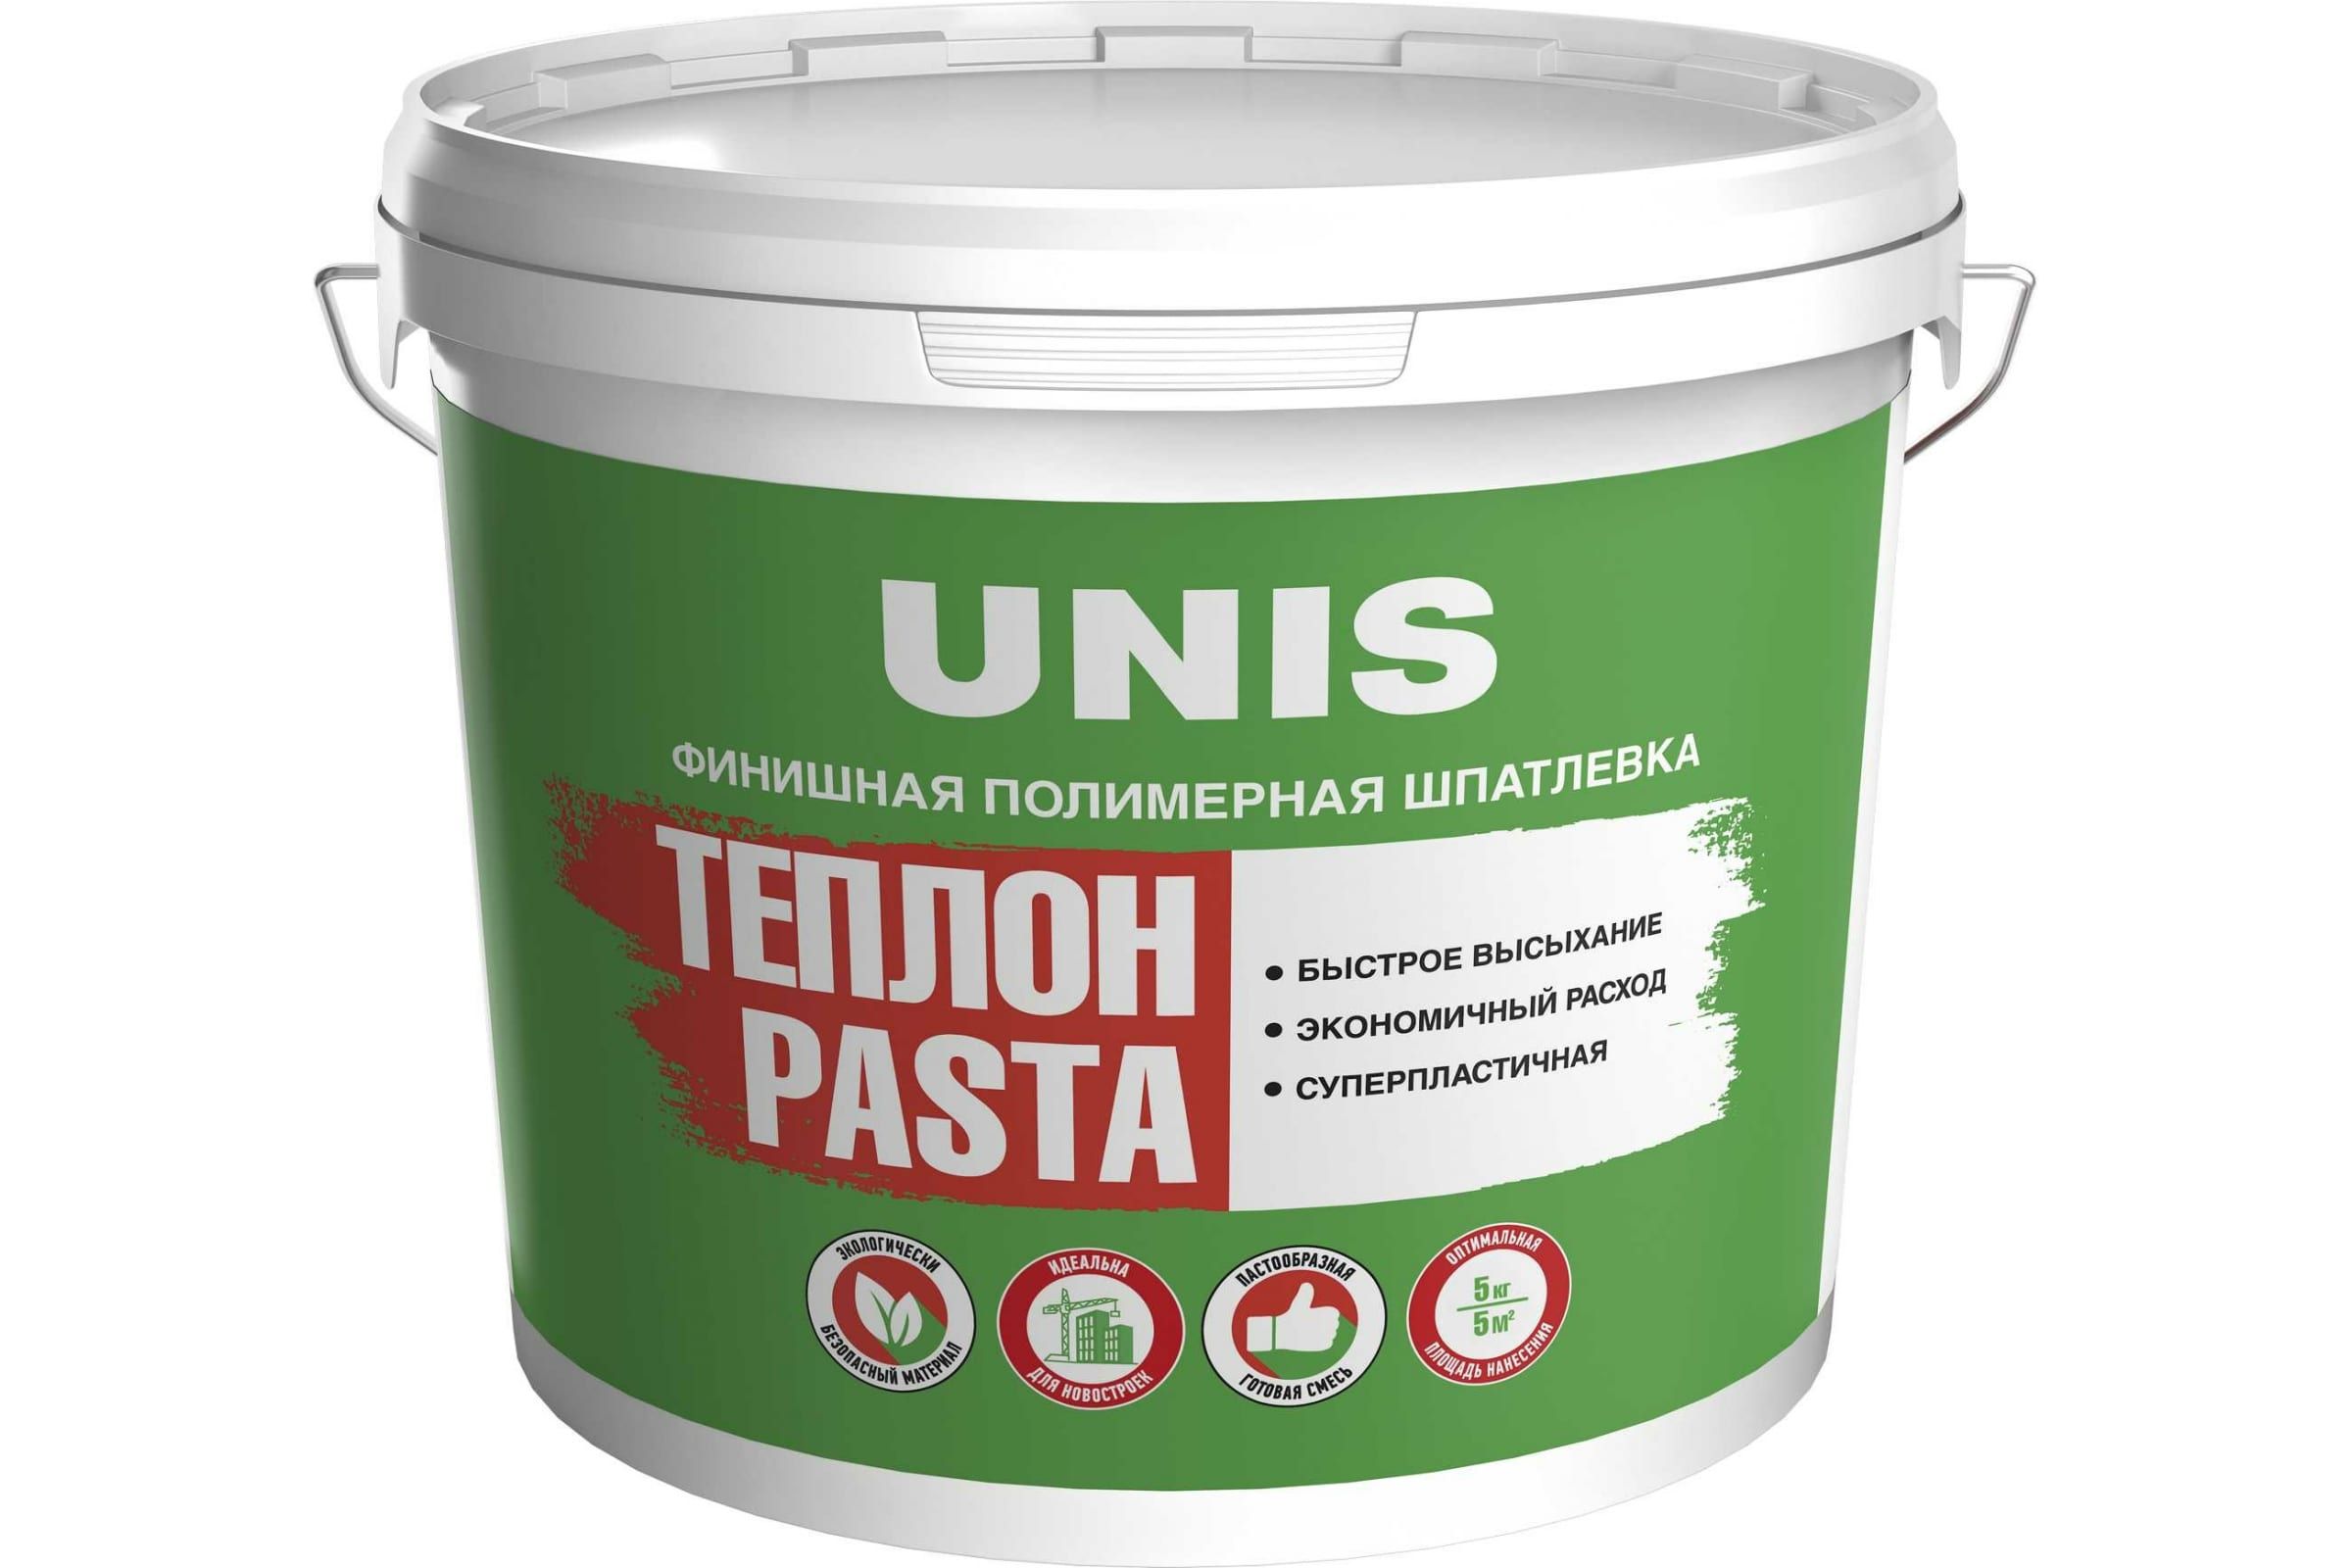 Шпатлевка UNIS Теплон Pasta полимерная, финишная, 5 кг 4607005184887 шпатлевка полимерная финишная unis теплон pasta 15 кг